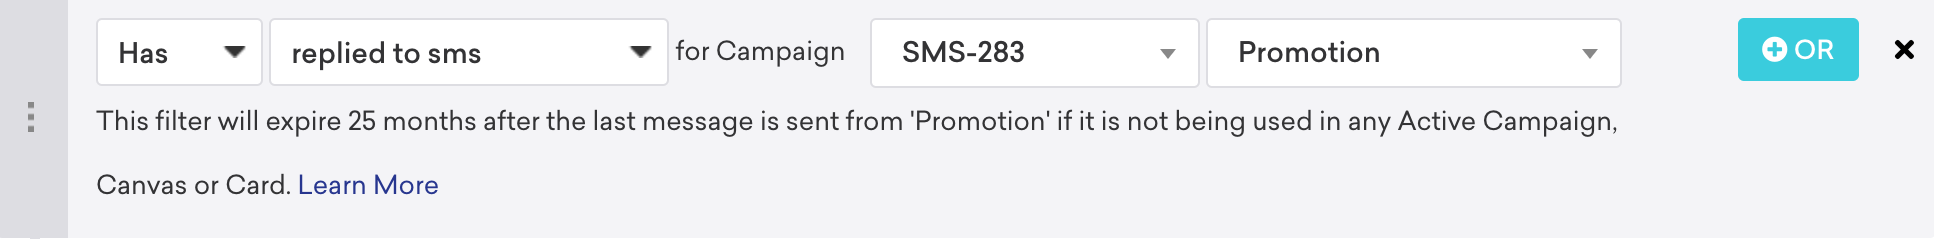 フィルタ&quot でキャンペーン;SMS&quot に返信しました;キャンペーン"SMS-283""プロモーション".フィルタの下で、このフィルタは&quot に言及しています。このフィルタは、最後のメッセージが"Promotion" から送信されてから25 か月後に期限切れになります。アクティブなキャンペーンで使用されていない場合は、"